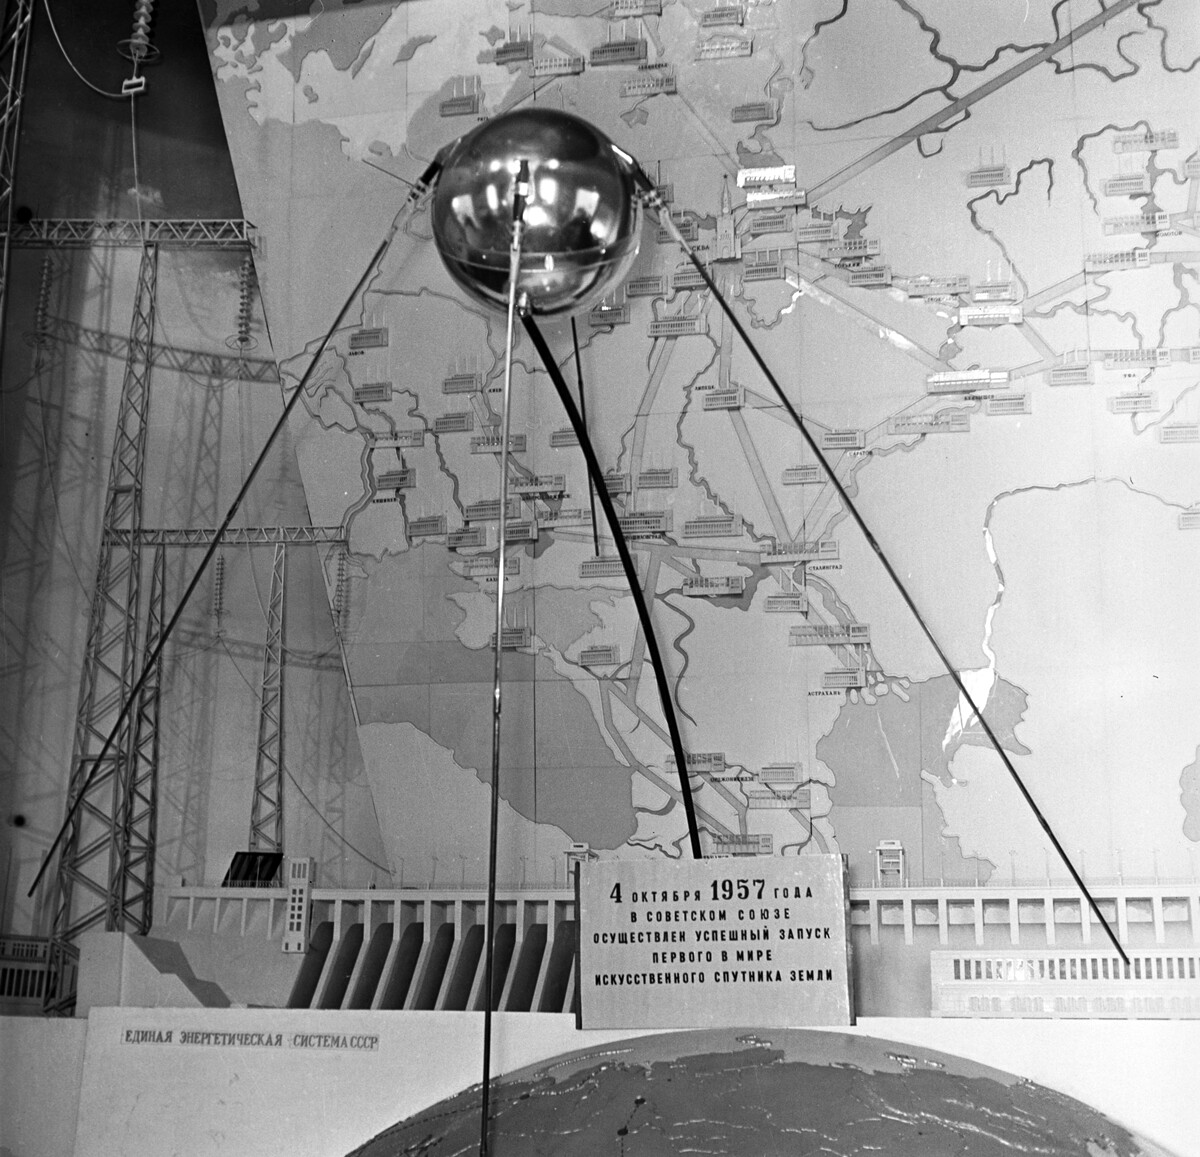 Model prvog sovjetskog svemirskog umjetnog satelita Zemlje u paviljonu 